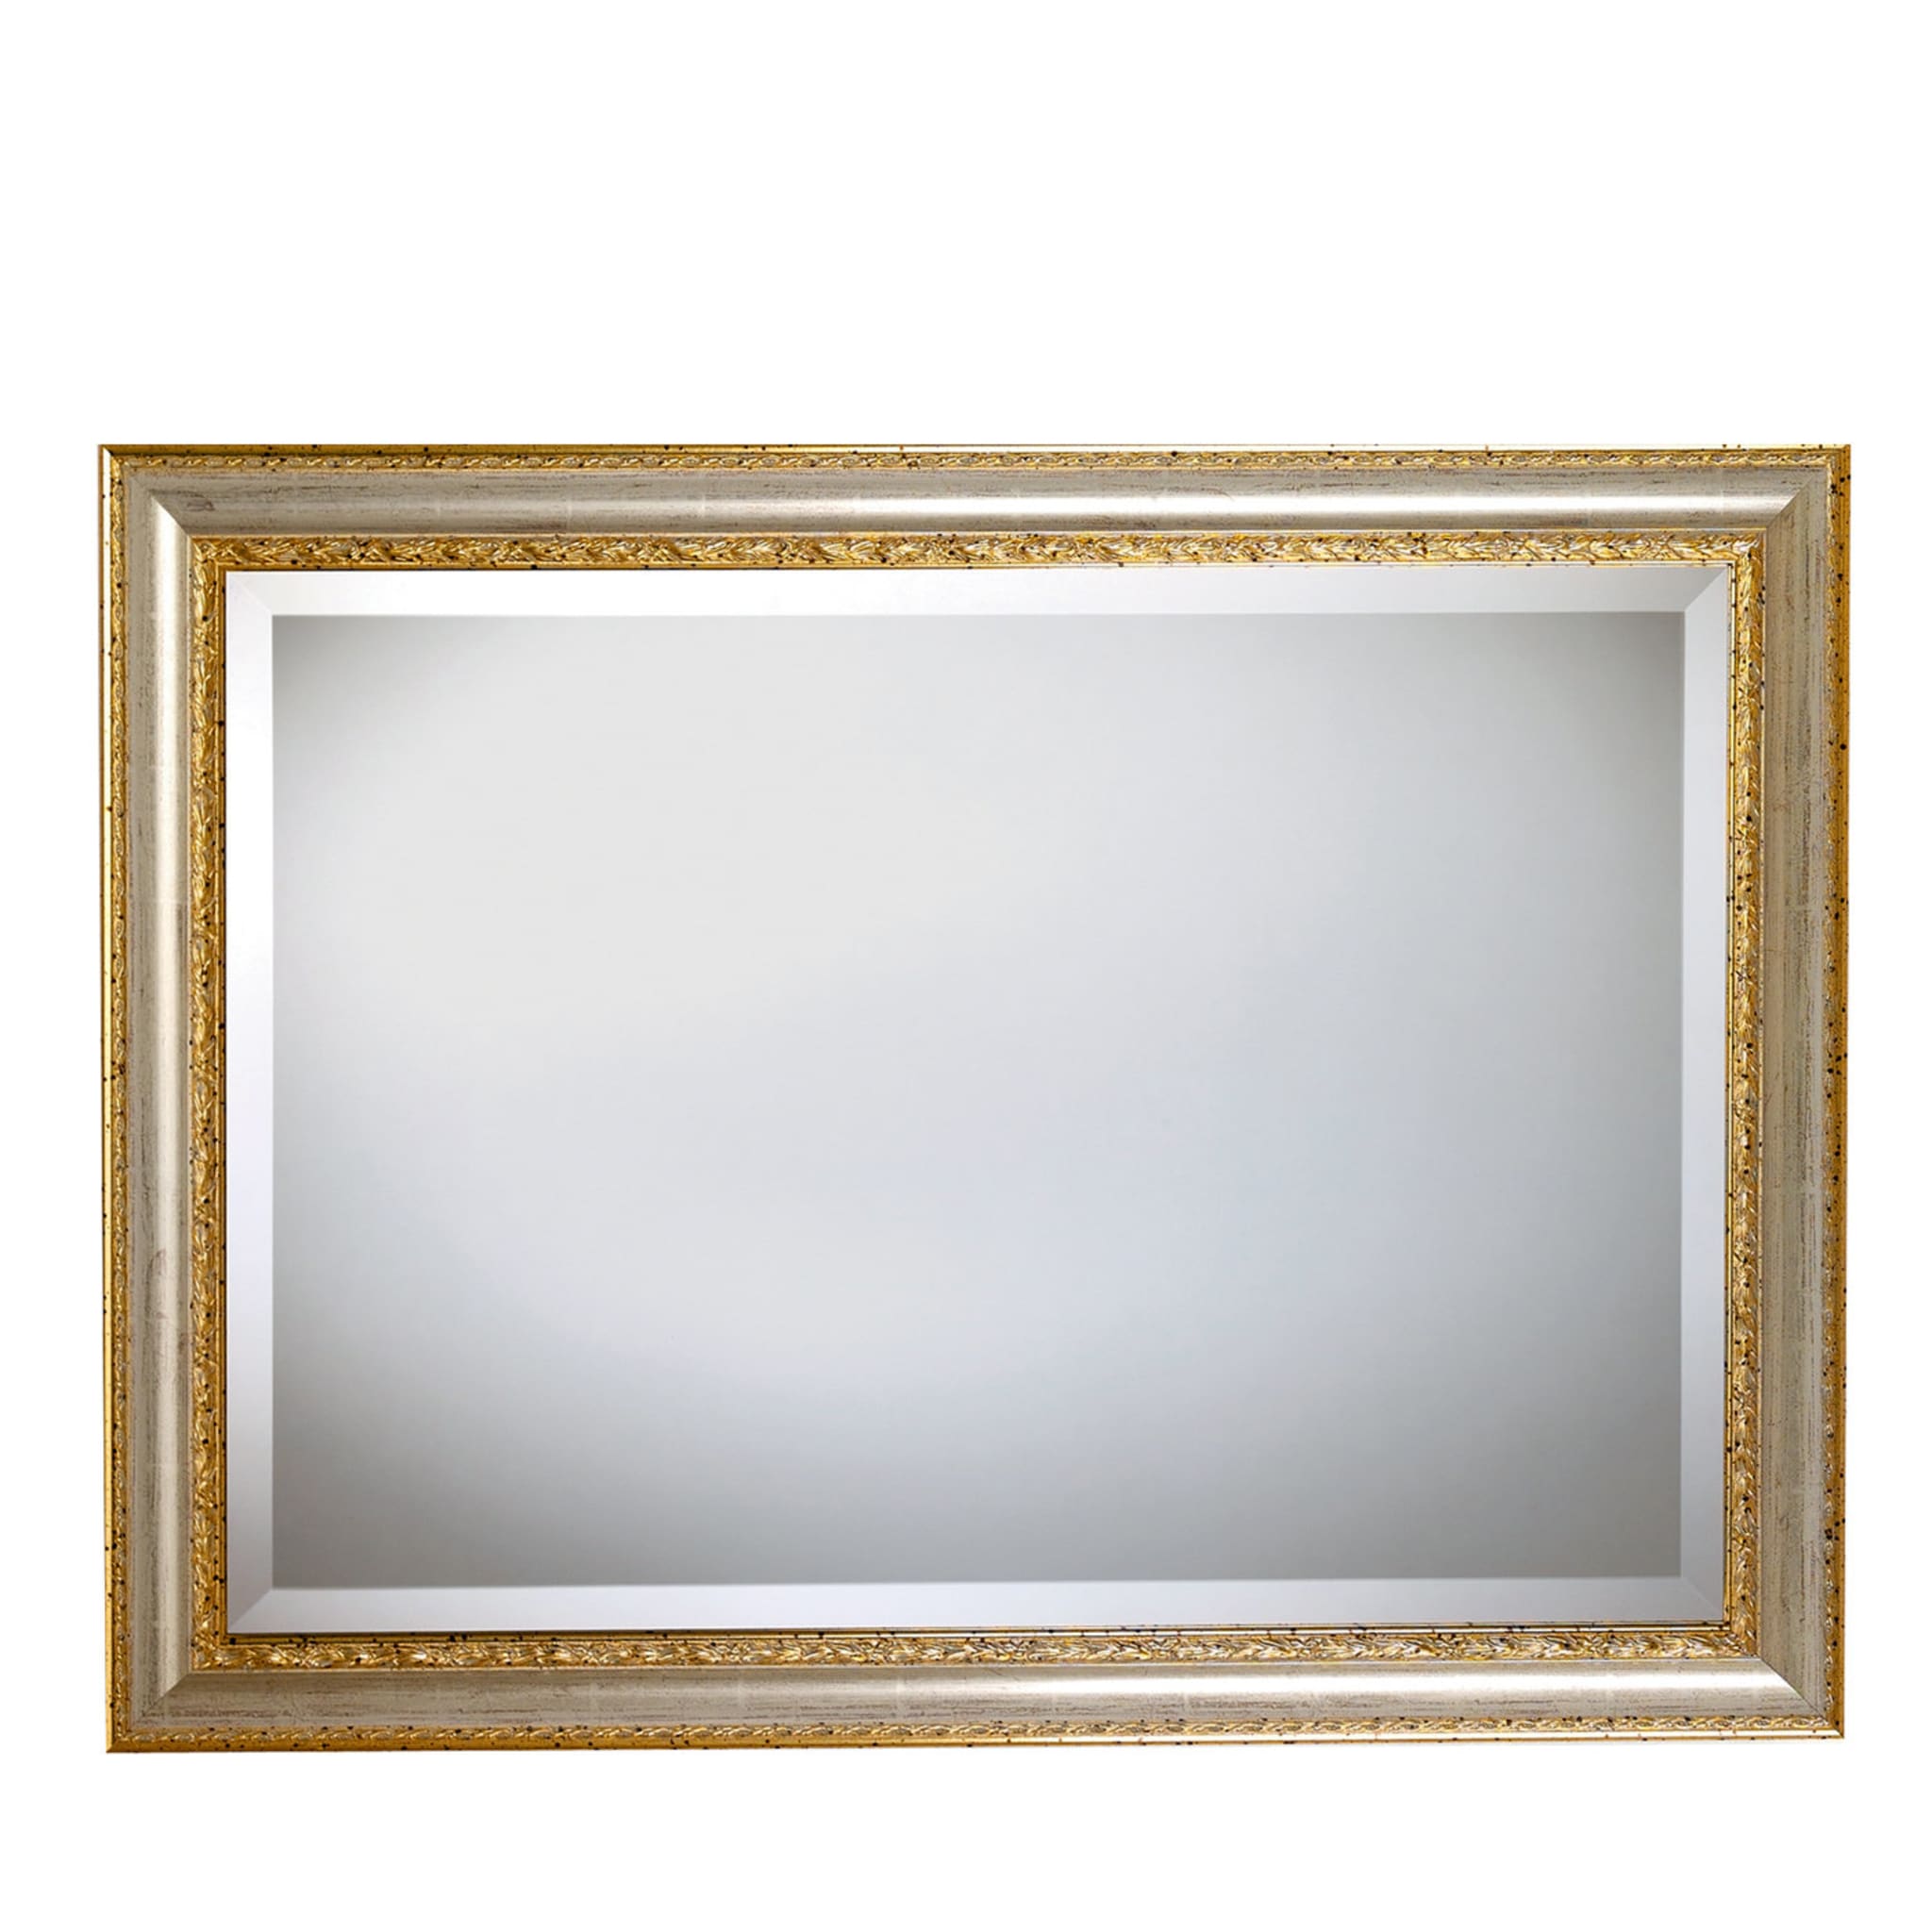 Miroir rectangulaire avec cadre doré - Vue principale